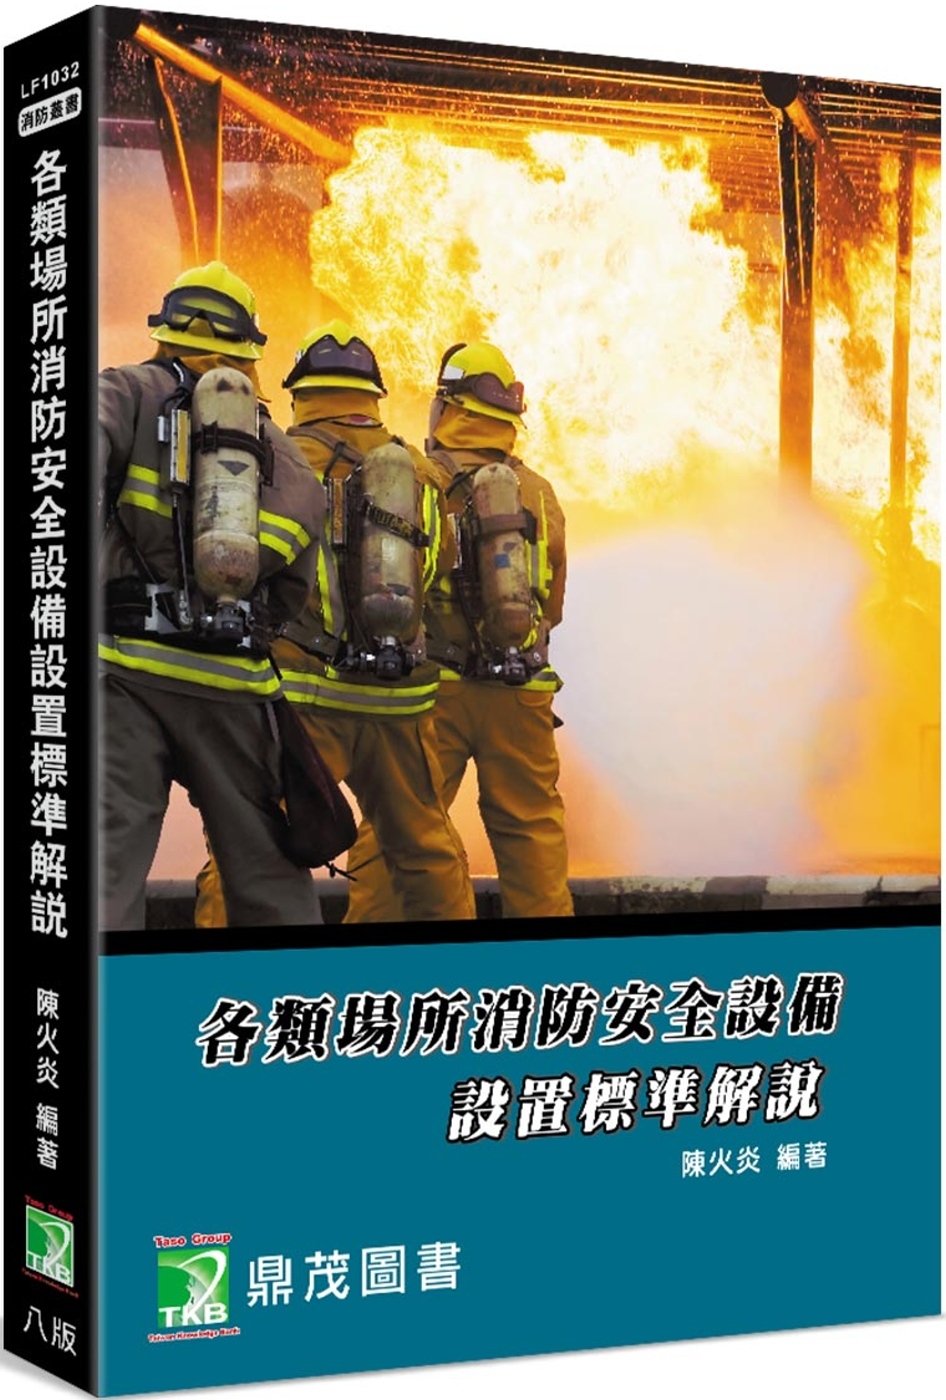 各類場所消防安全設備設置標準解說[適用消防設備師/士、消防人...